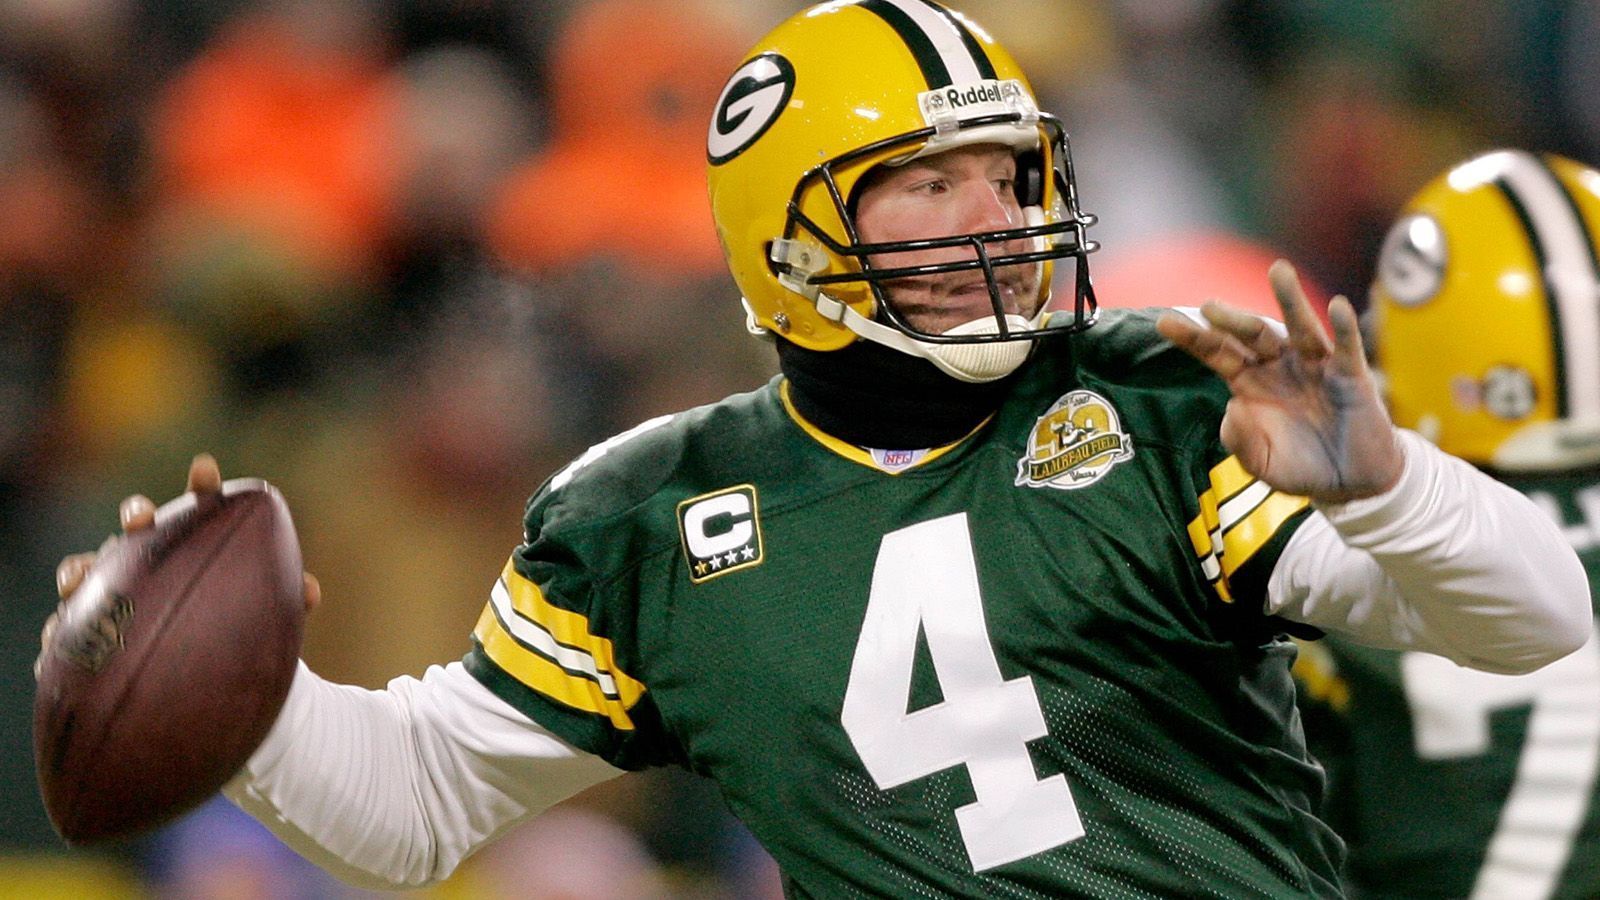 
                <strong>Green Bay Packers: Brett Favre (Quarterback) </strong><br>
                Favre war ein legendärer Quarterback, der die Packers zu einem Super-Bowl-Sieg führte und zahlreiche NFL-Rekorde hält.
              